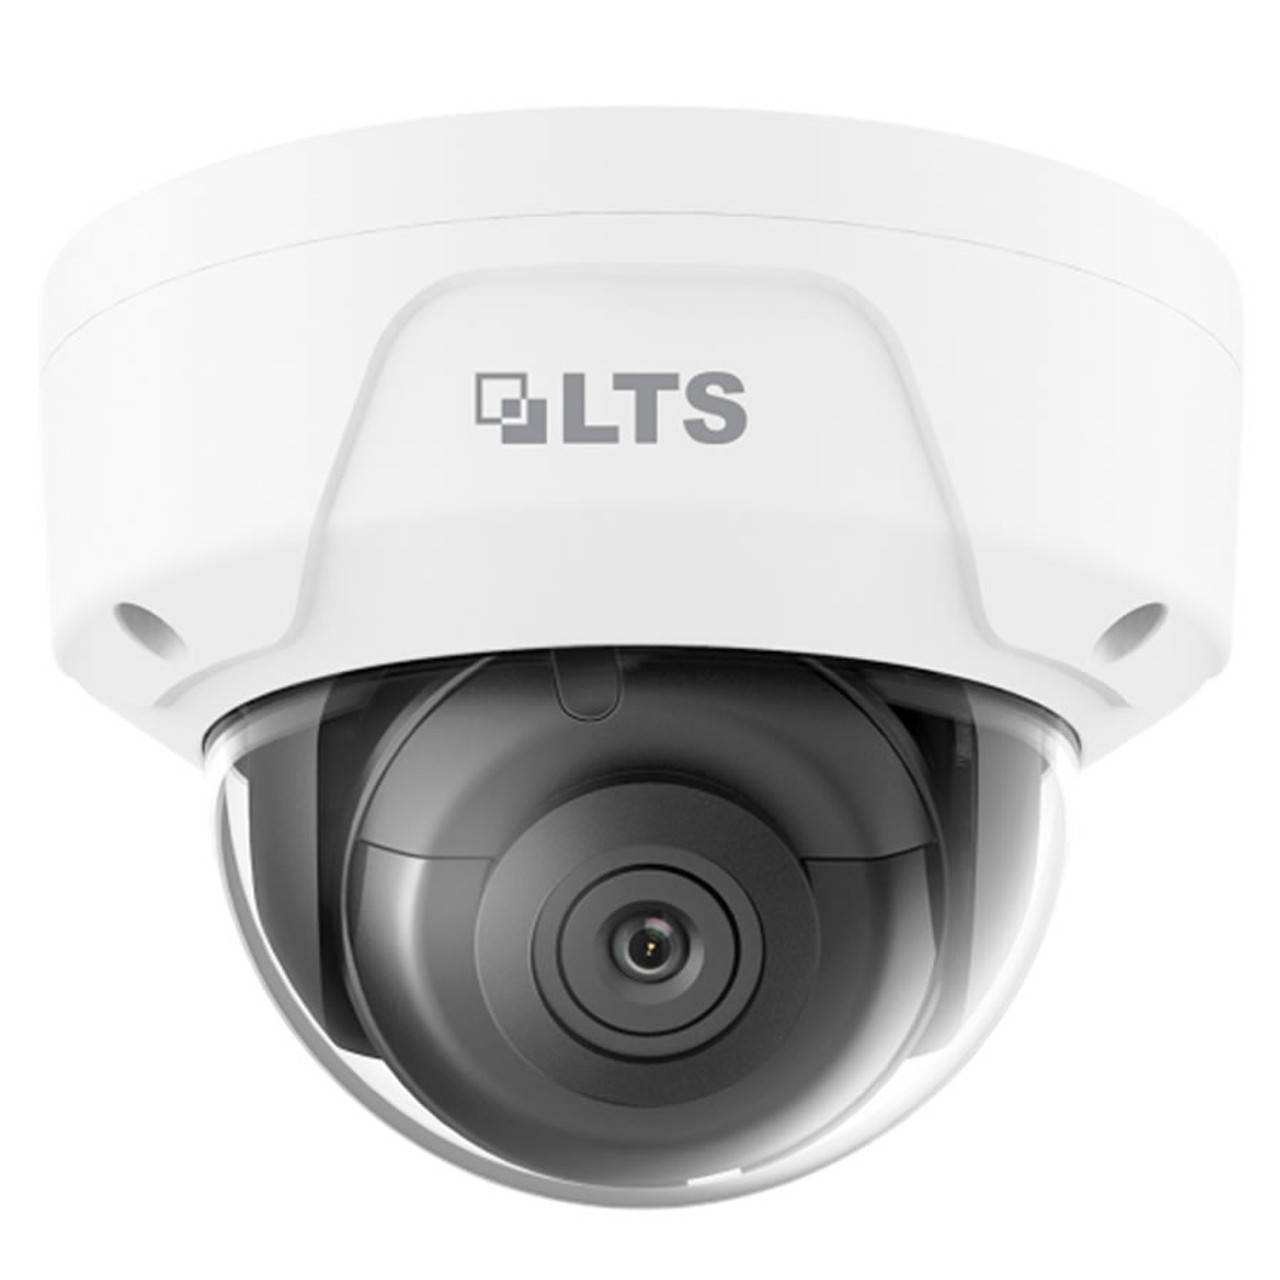 Elevator Security Cameras, Elevator CCTV Surveillance Systems